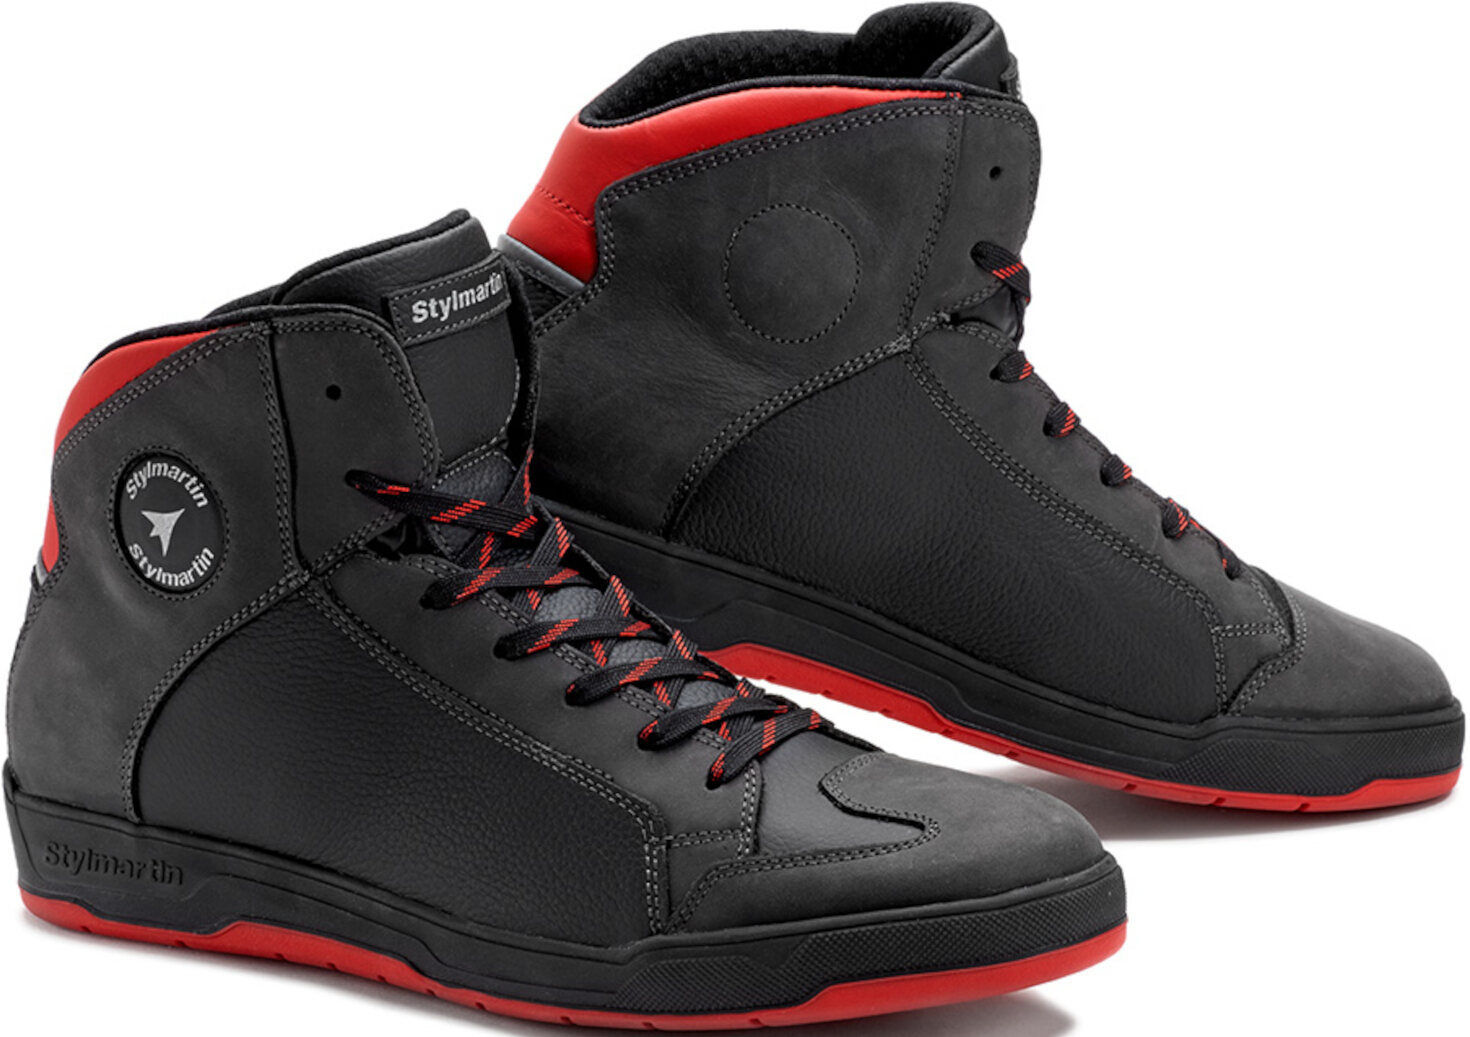 Stylmartin Double Zapatos de motocicleta impermeables - Negro Rojo (44)